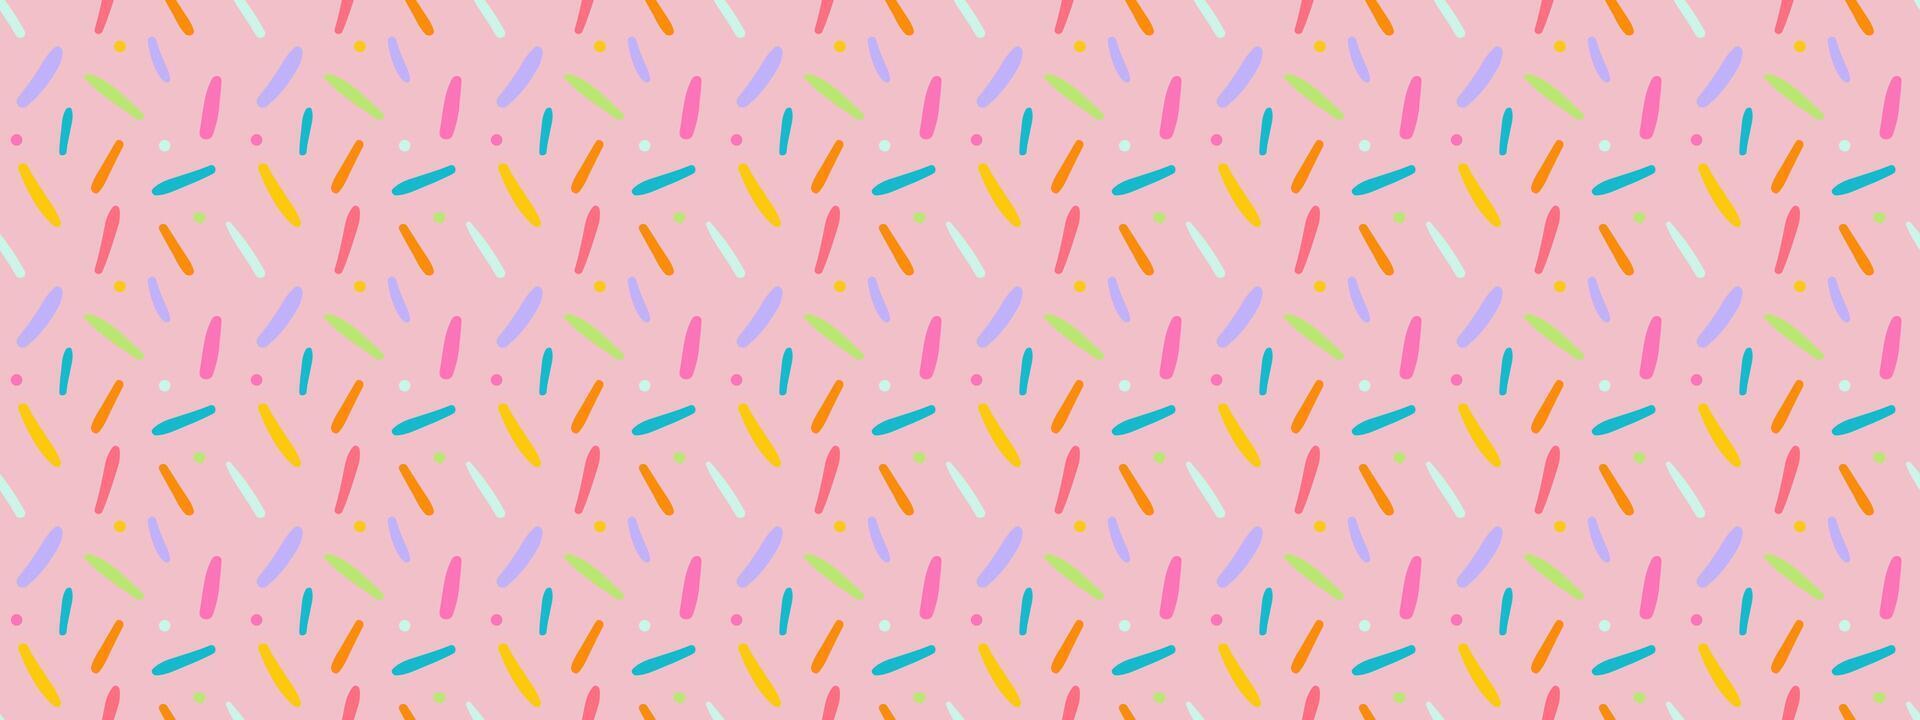 naadloos gemakkelijk bestrooi confetti Pasen snoep patroon. vector illustratie voor vakantie.